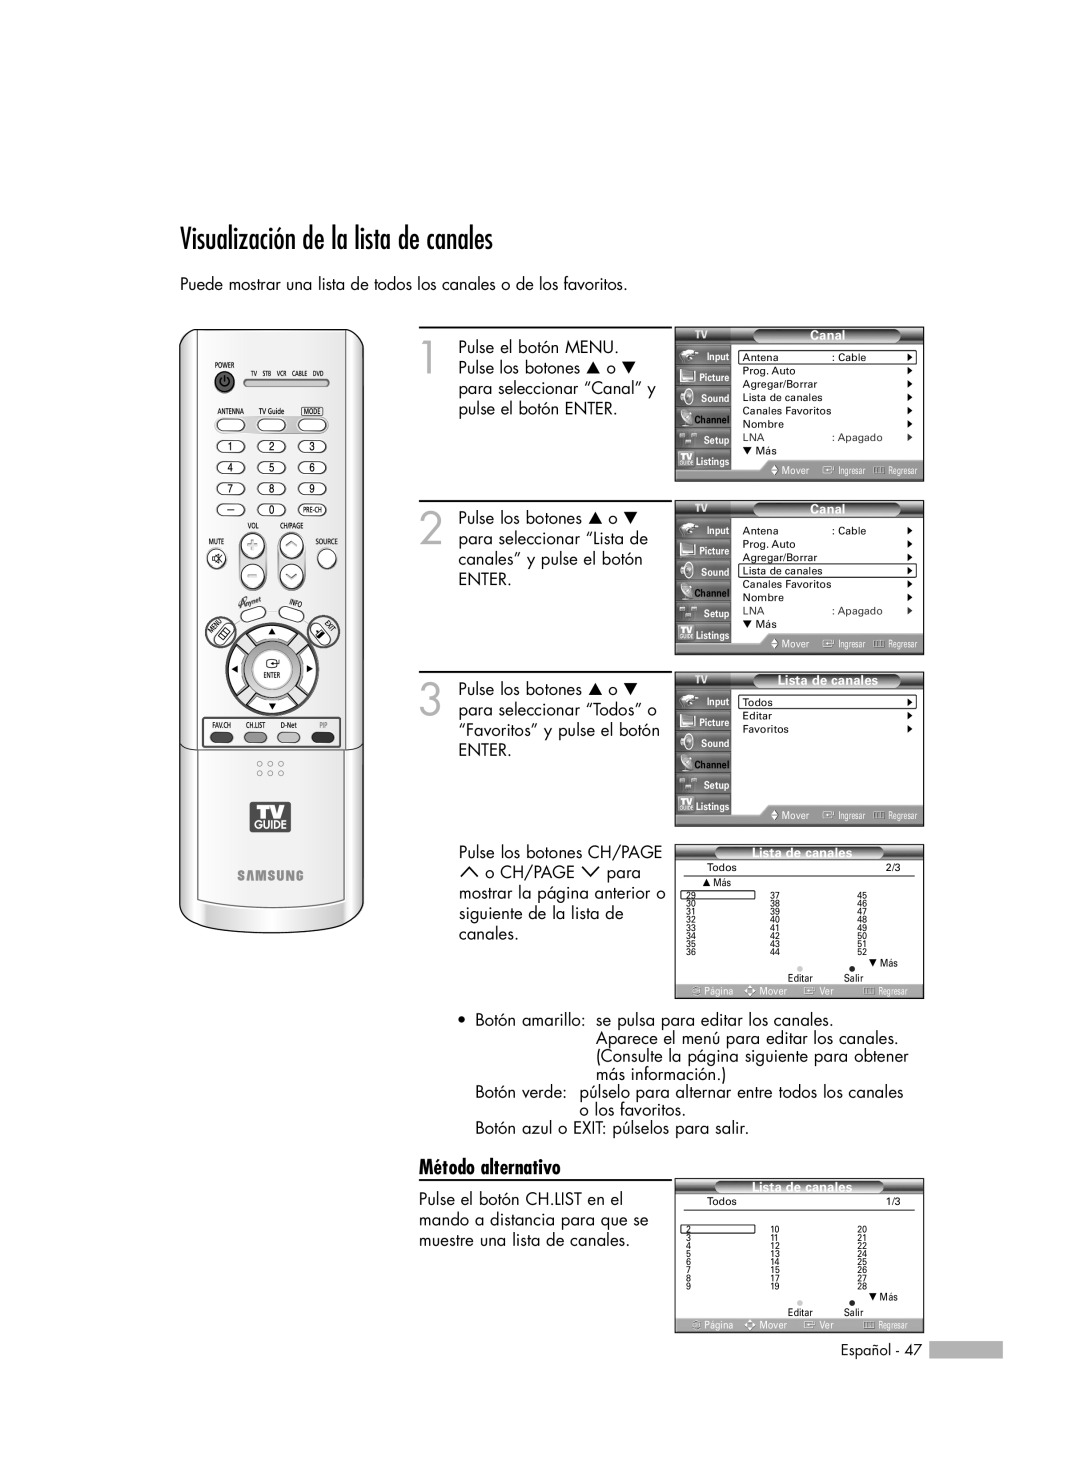 Samsung HL-R7178W, HL-R6178W, HL-R5078W, HL-R5678W manual Visualización de la lista de canales, Método alternativo 